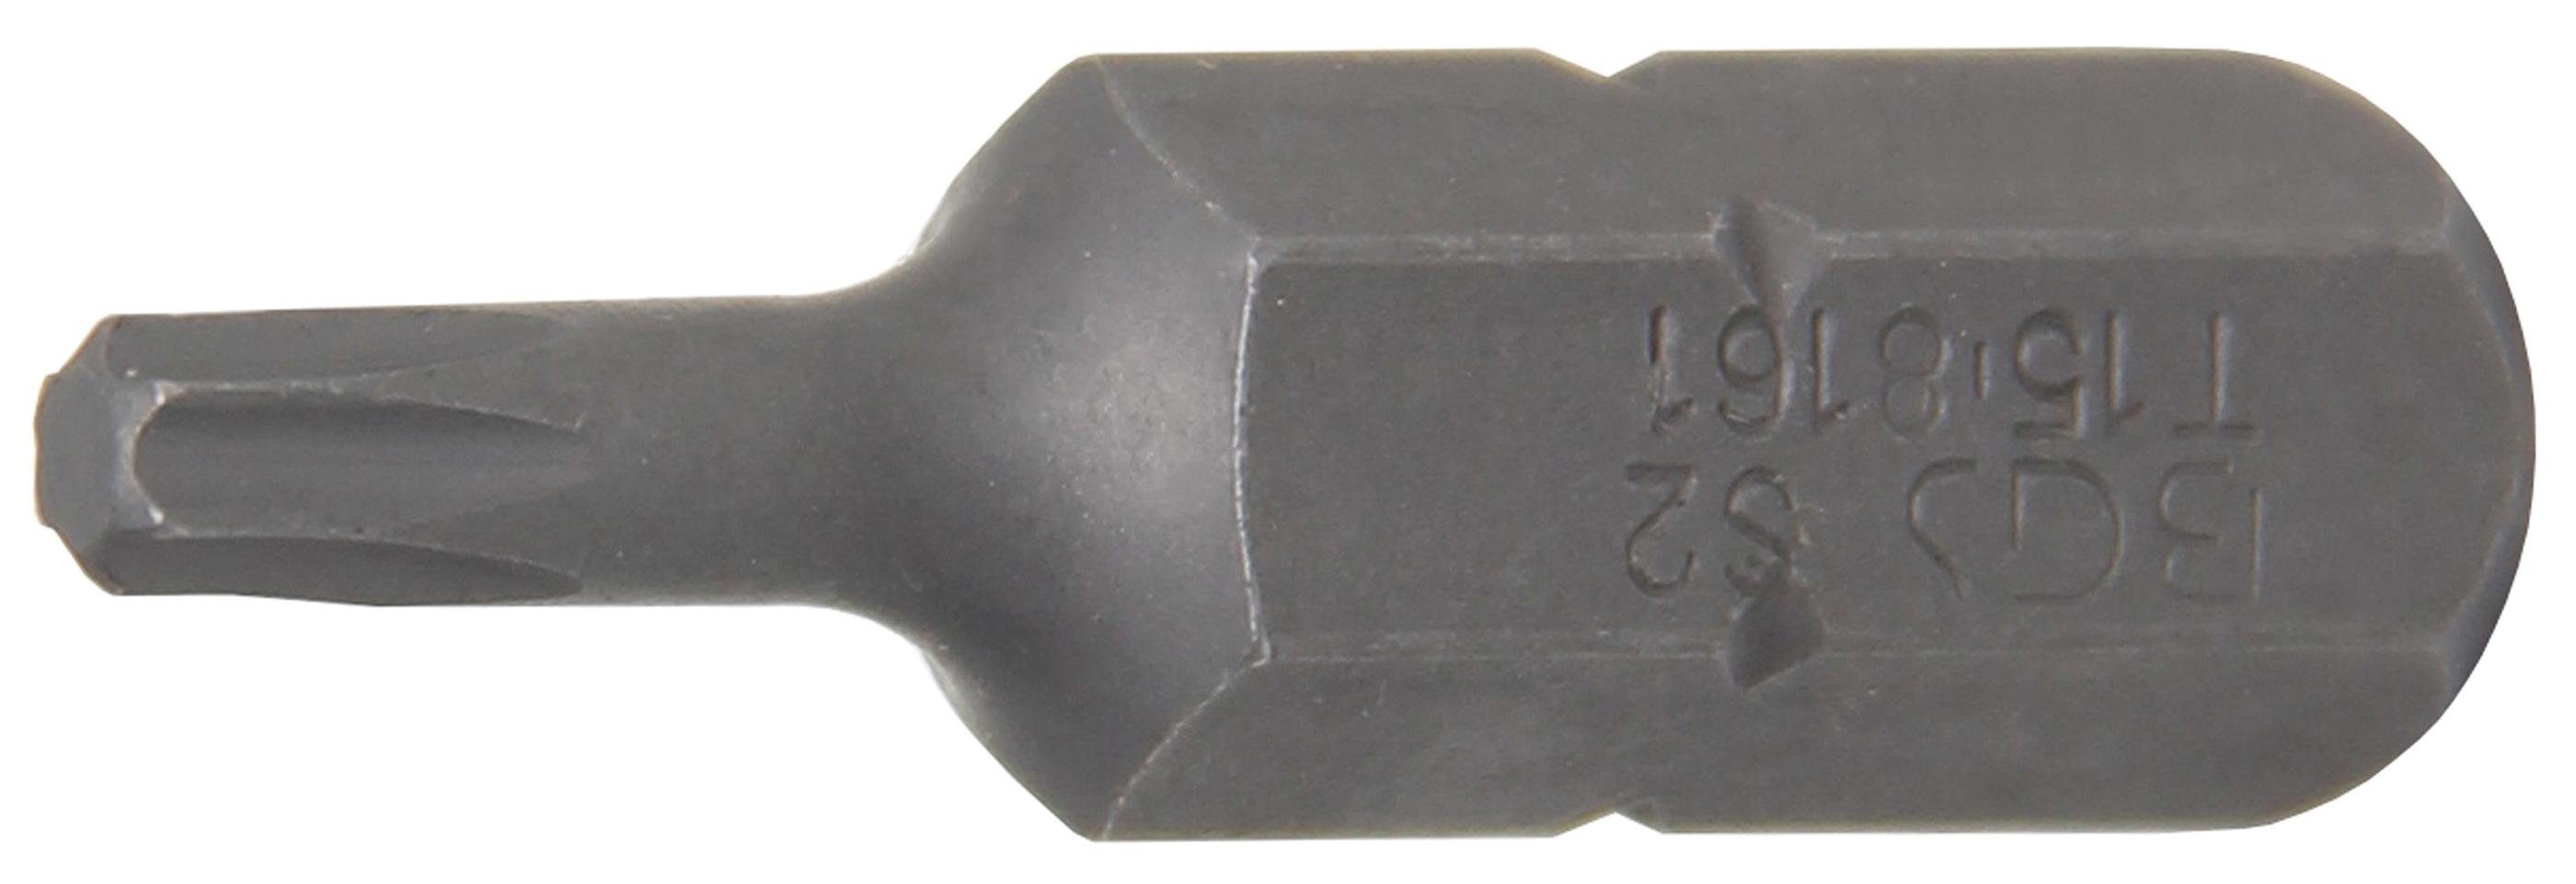 BGS technic Bit-Schraubendreher Bit, Antrieb Außensechskant 8 mm (5/16), T-Profil (für Torx) T15